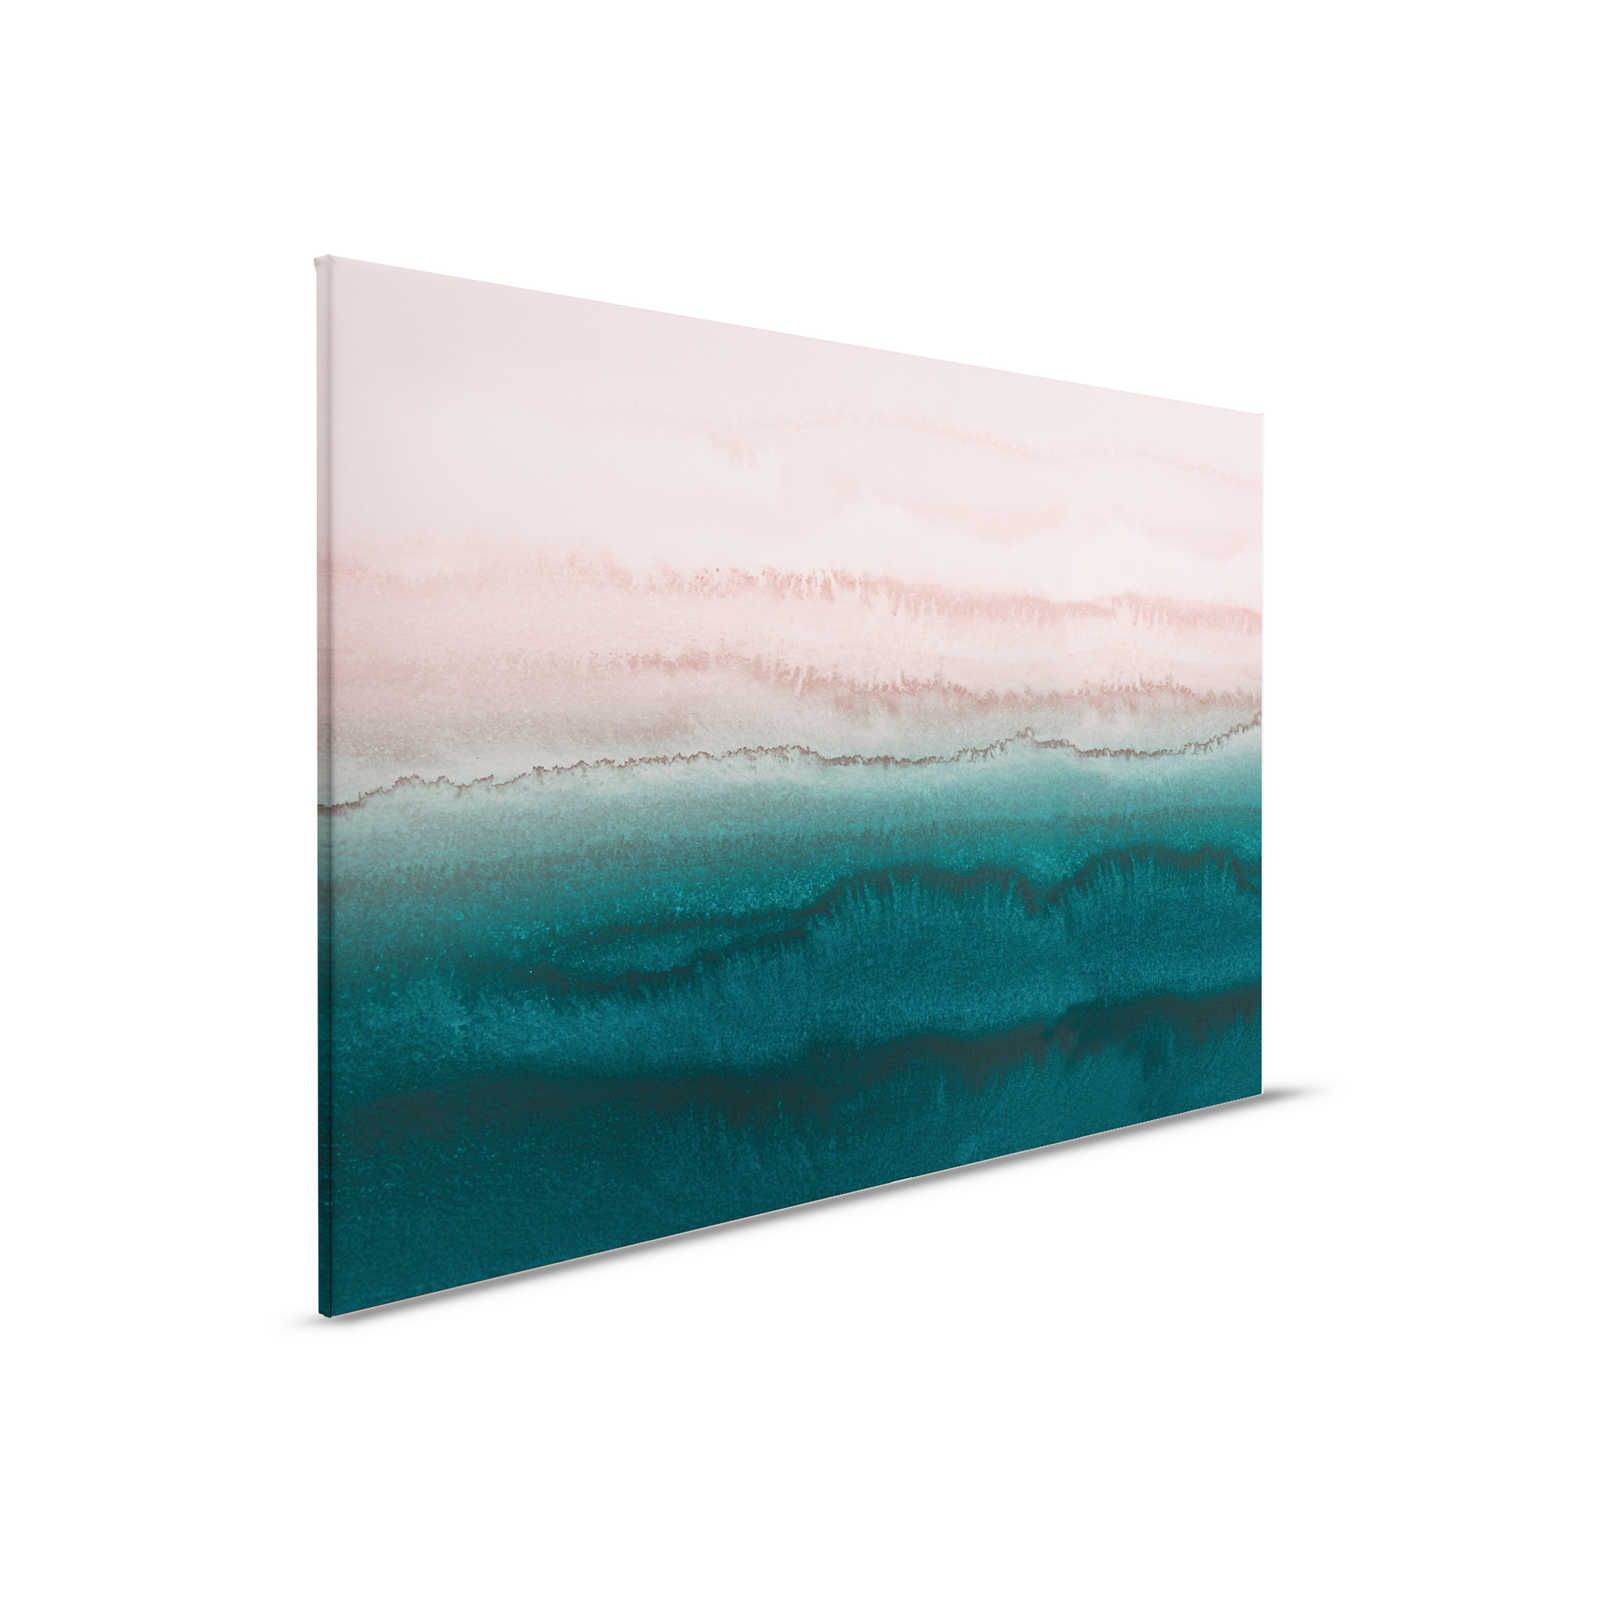 Gezeiten Leinwandbild mit abstraktem Wasser Aquarell – 0,90 m x 0,60 m
